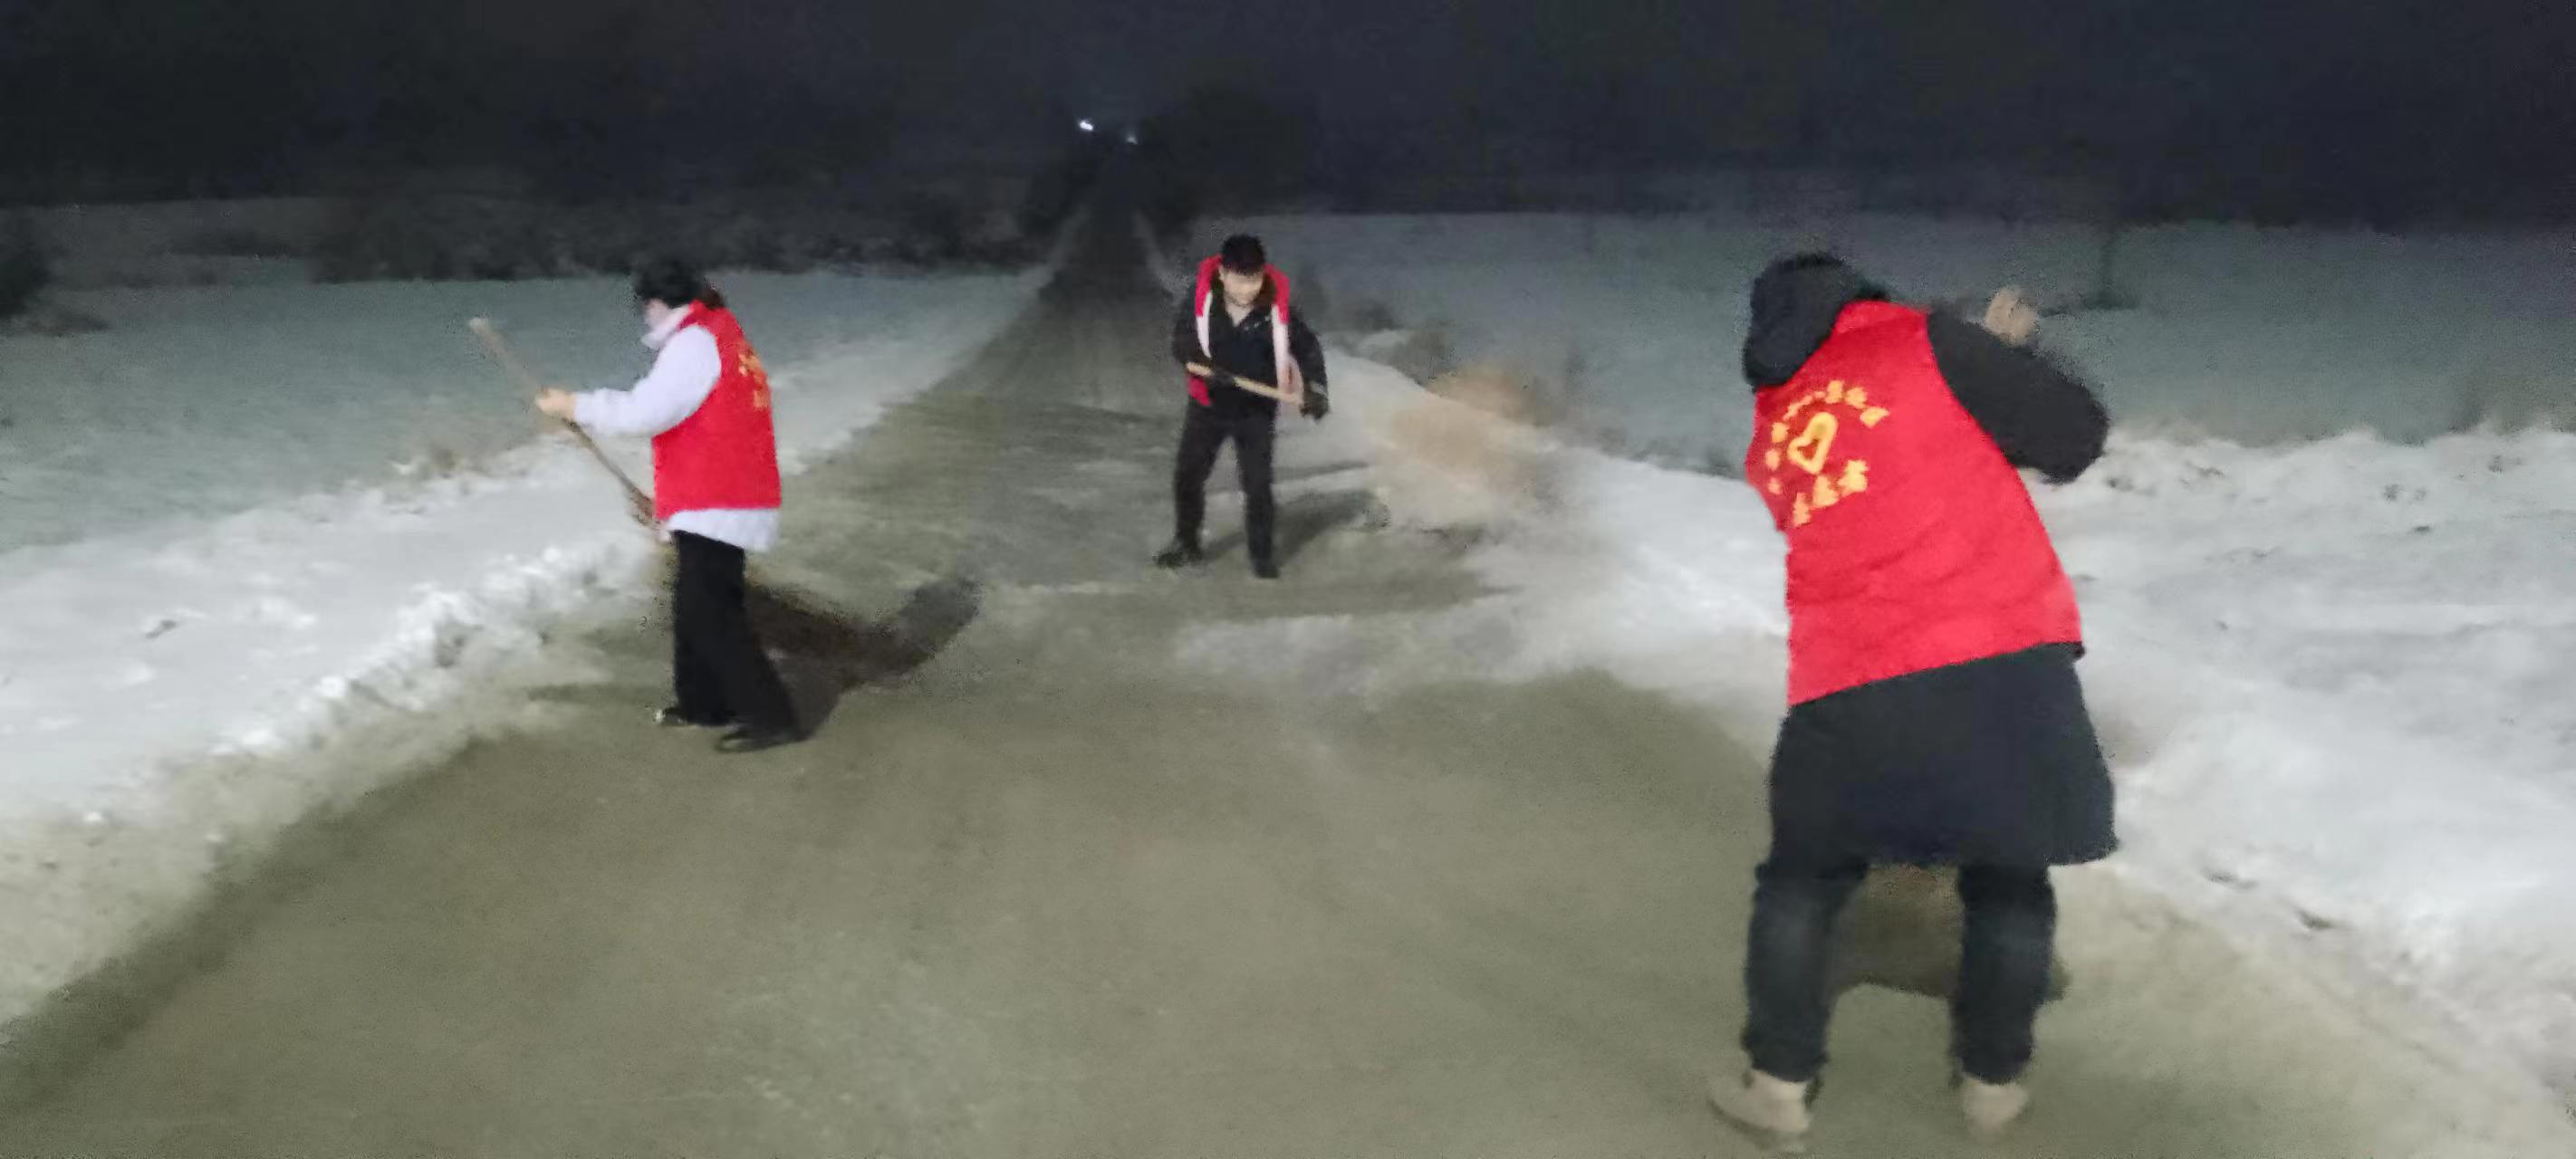 十八集社区开展“志愿扫雪”工作